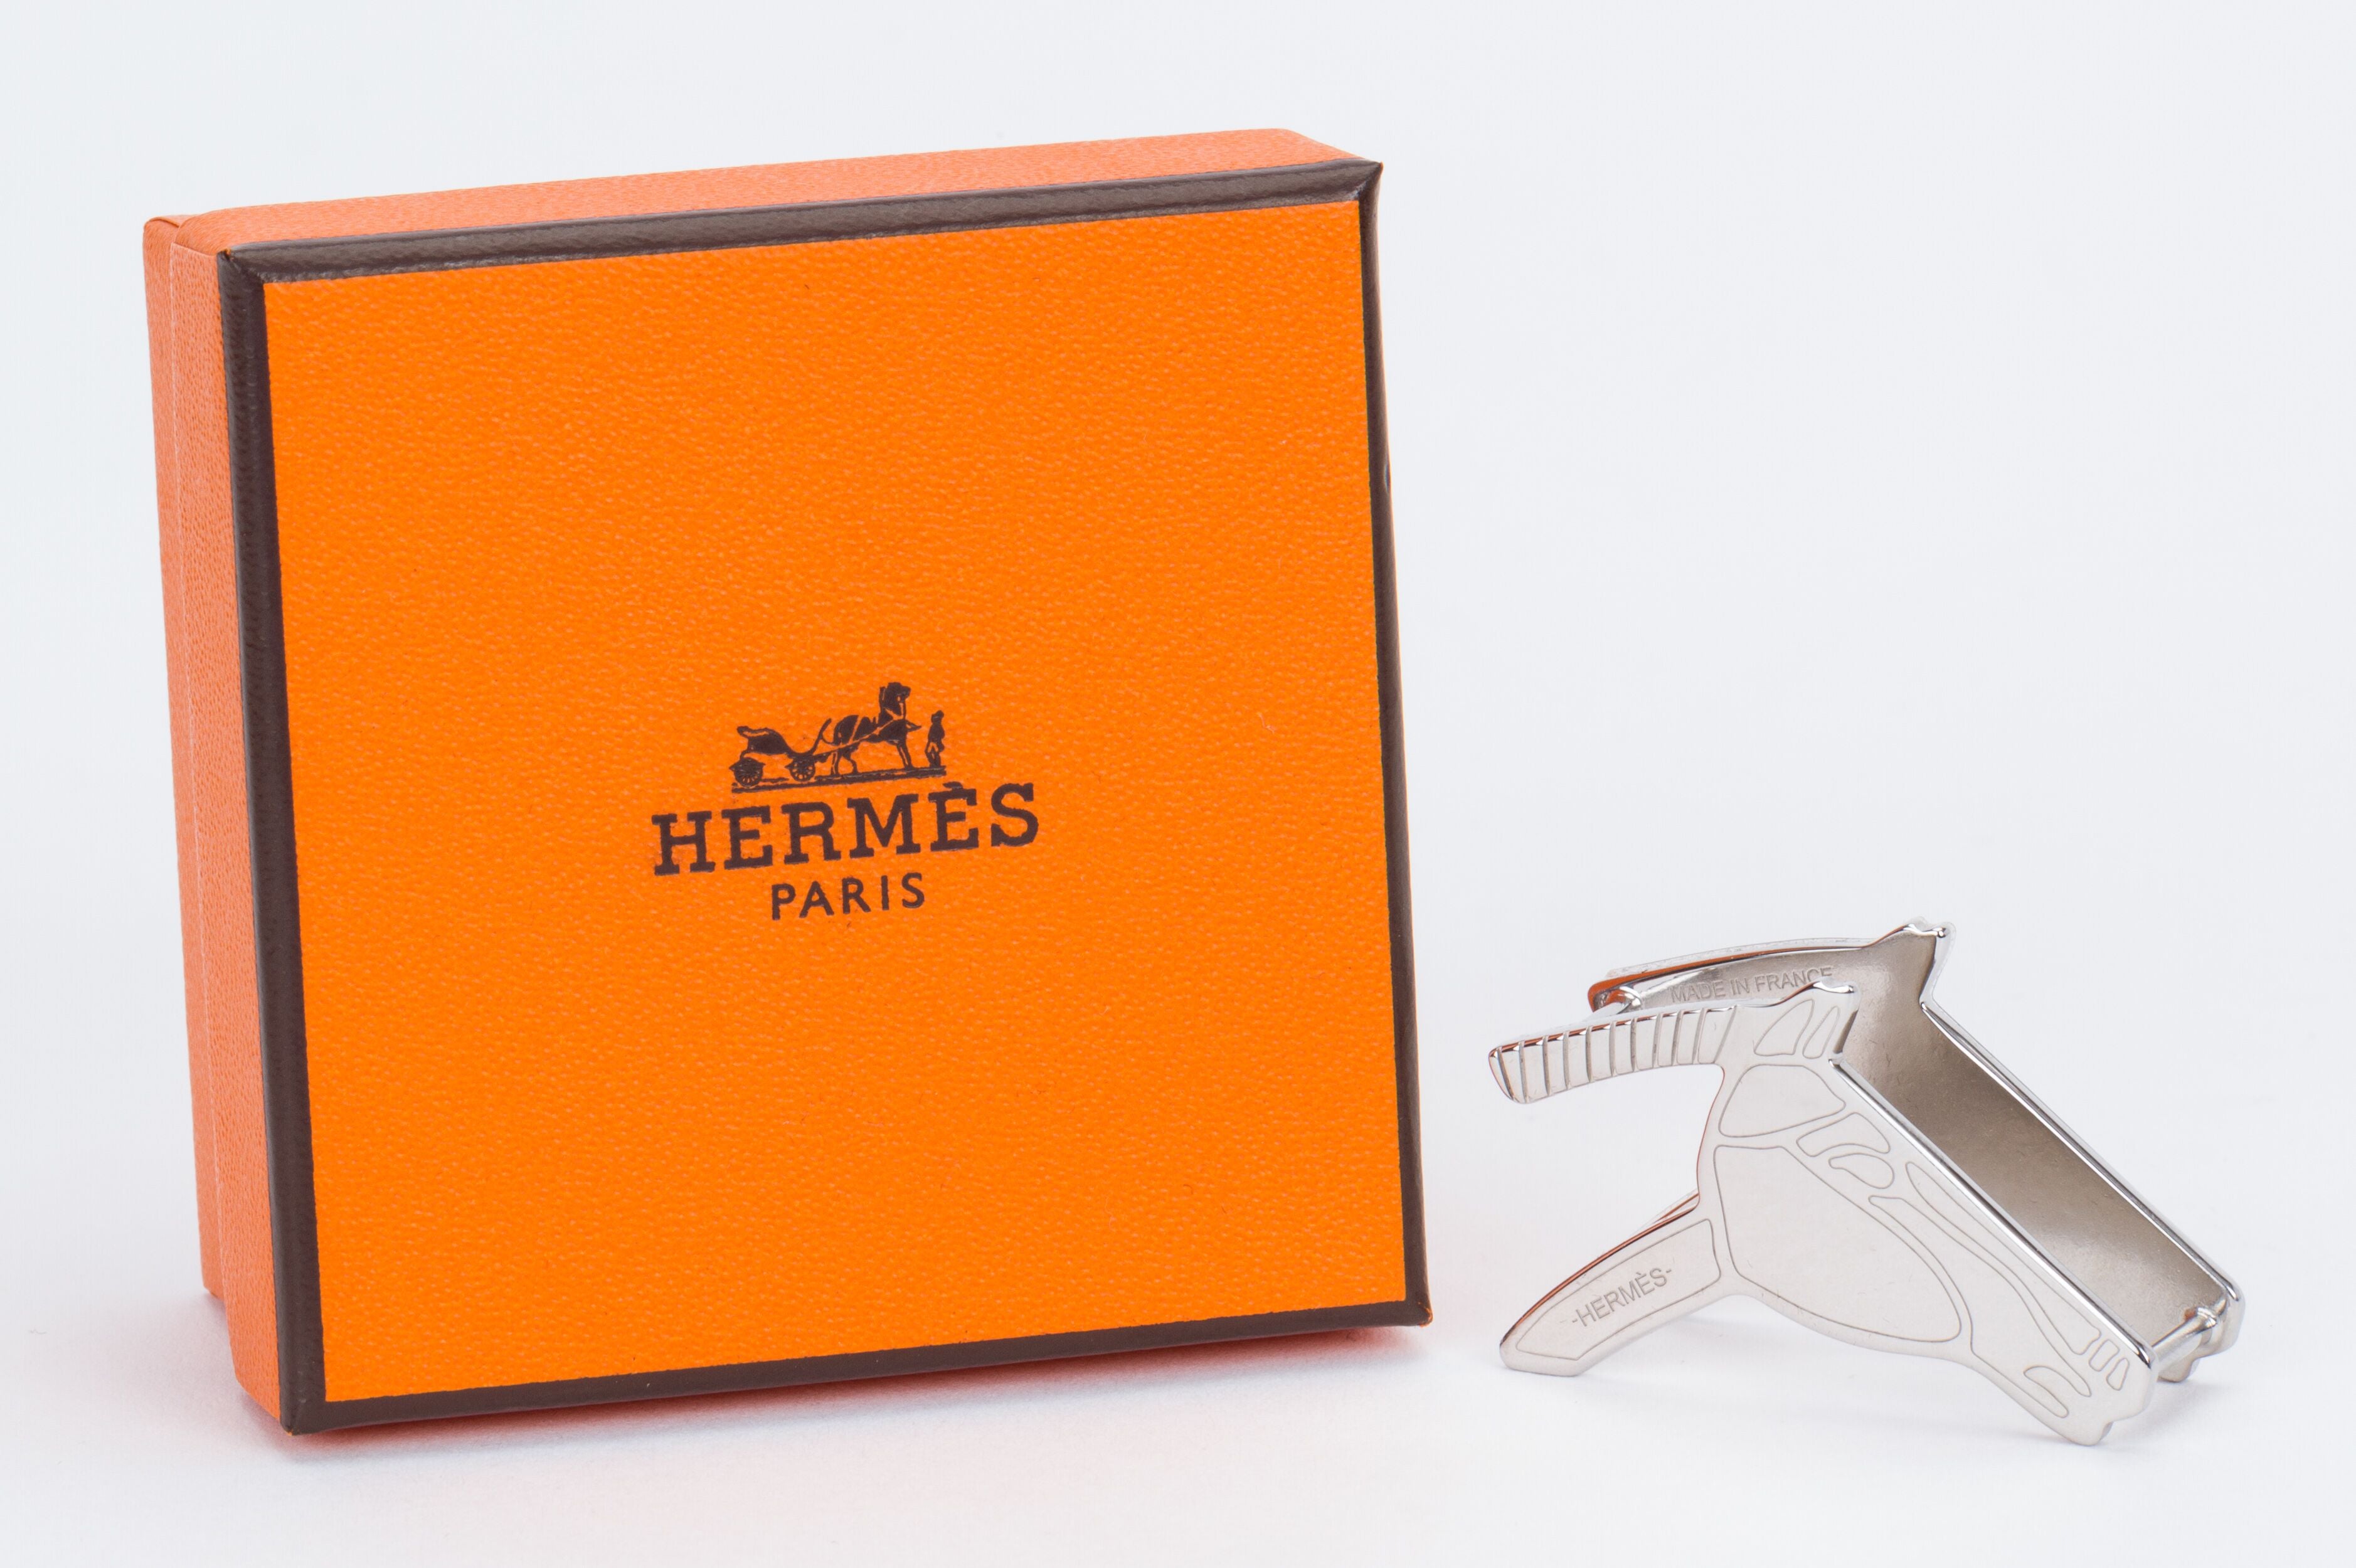 Hermès Permabrass Trio Scarf Ring, myGemma, CH